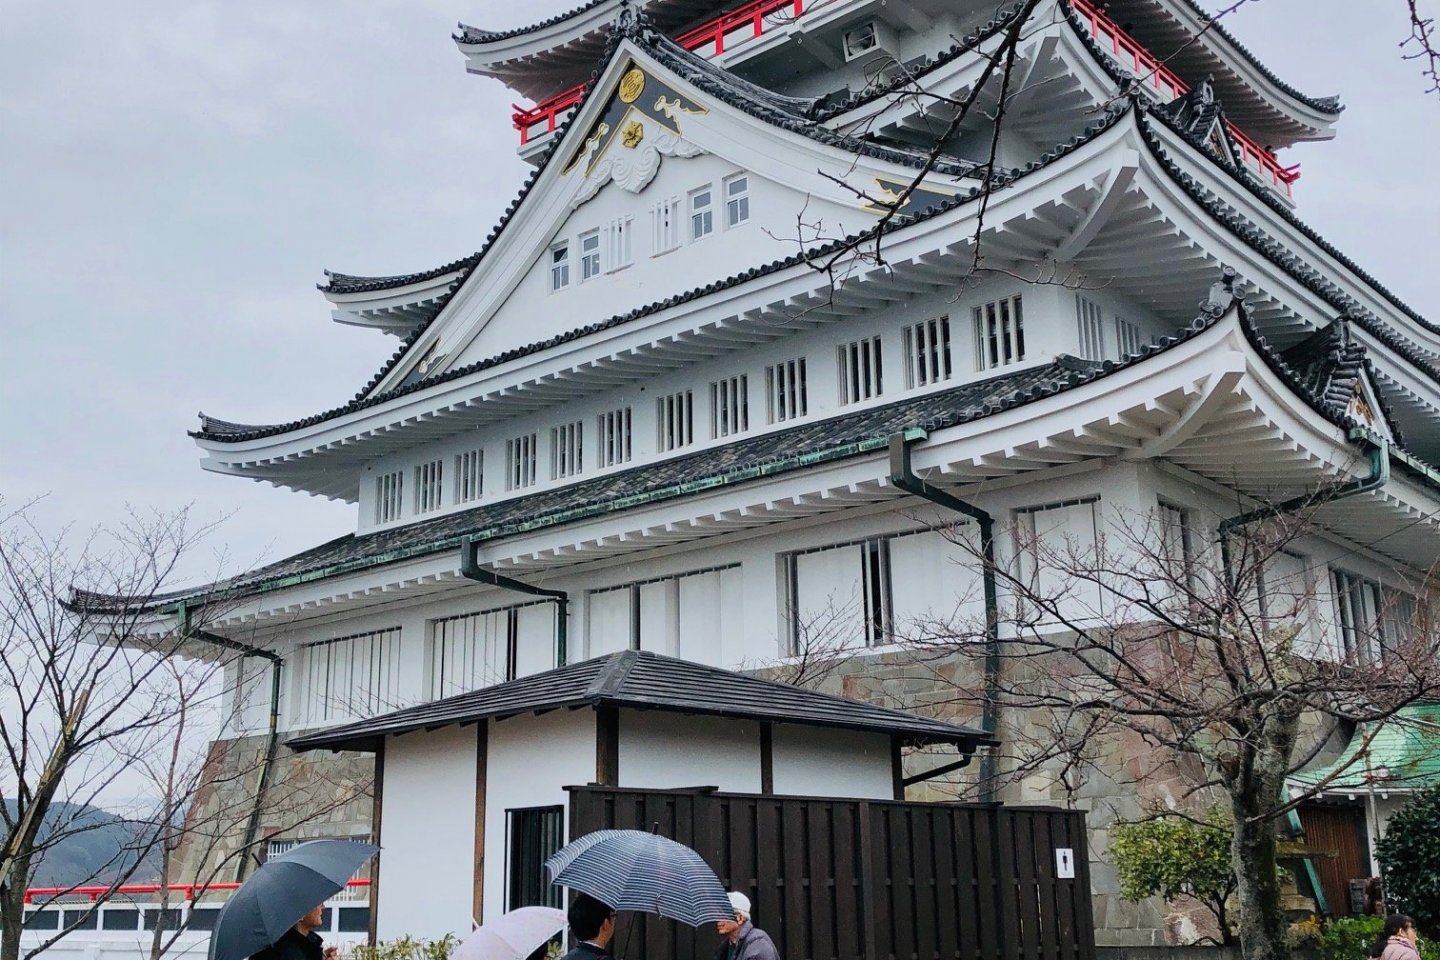 Vista do Castelo de Atami